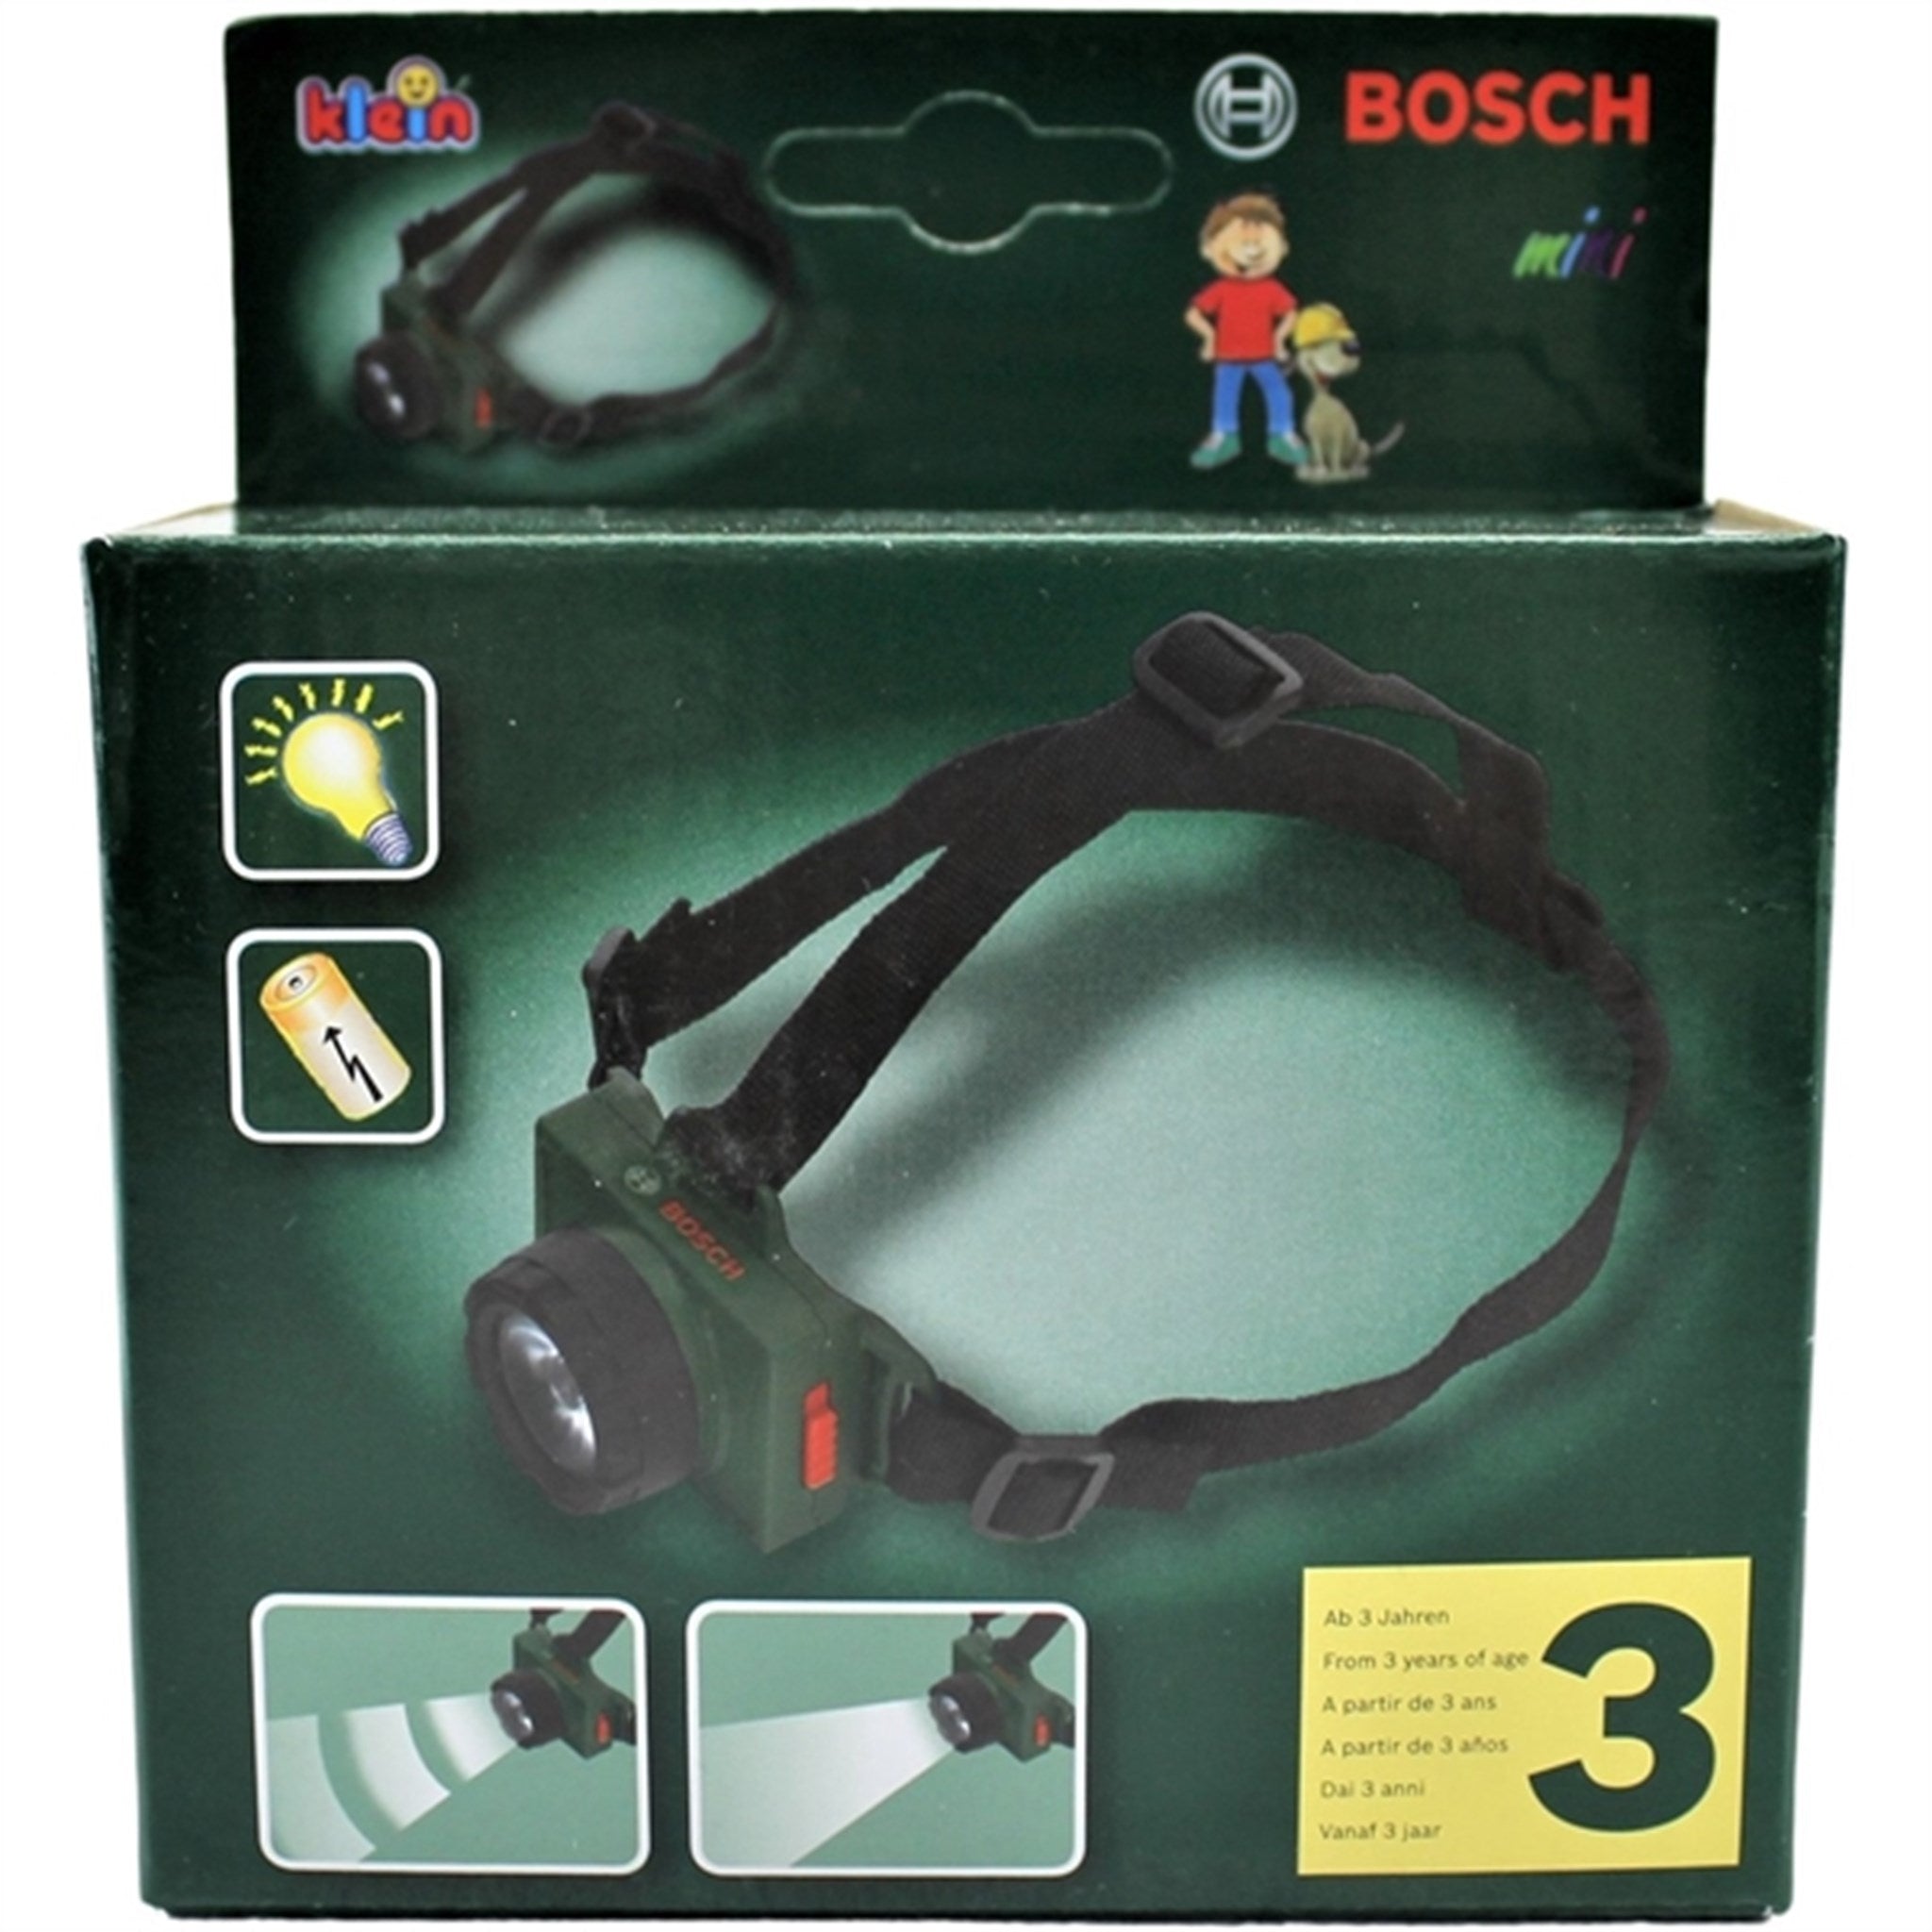 Bosch Pannlampa 2